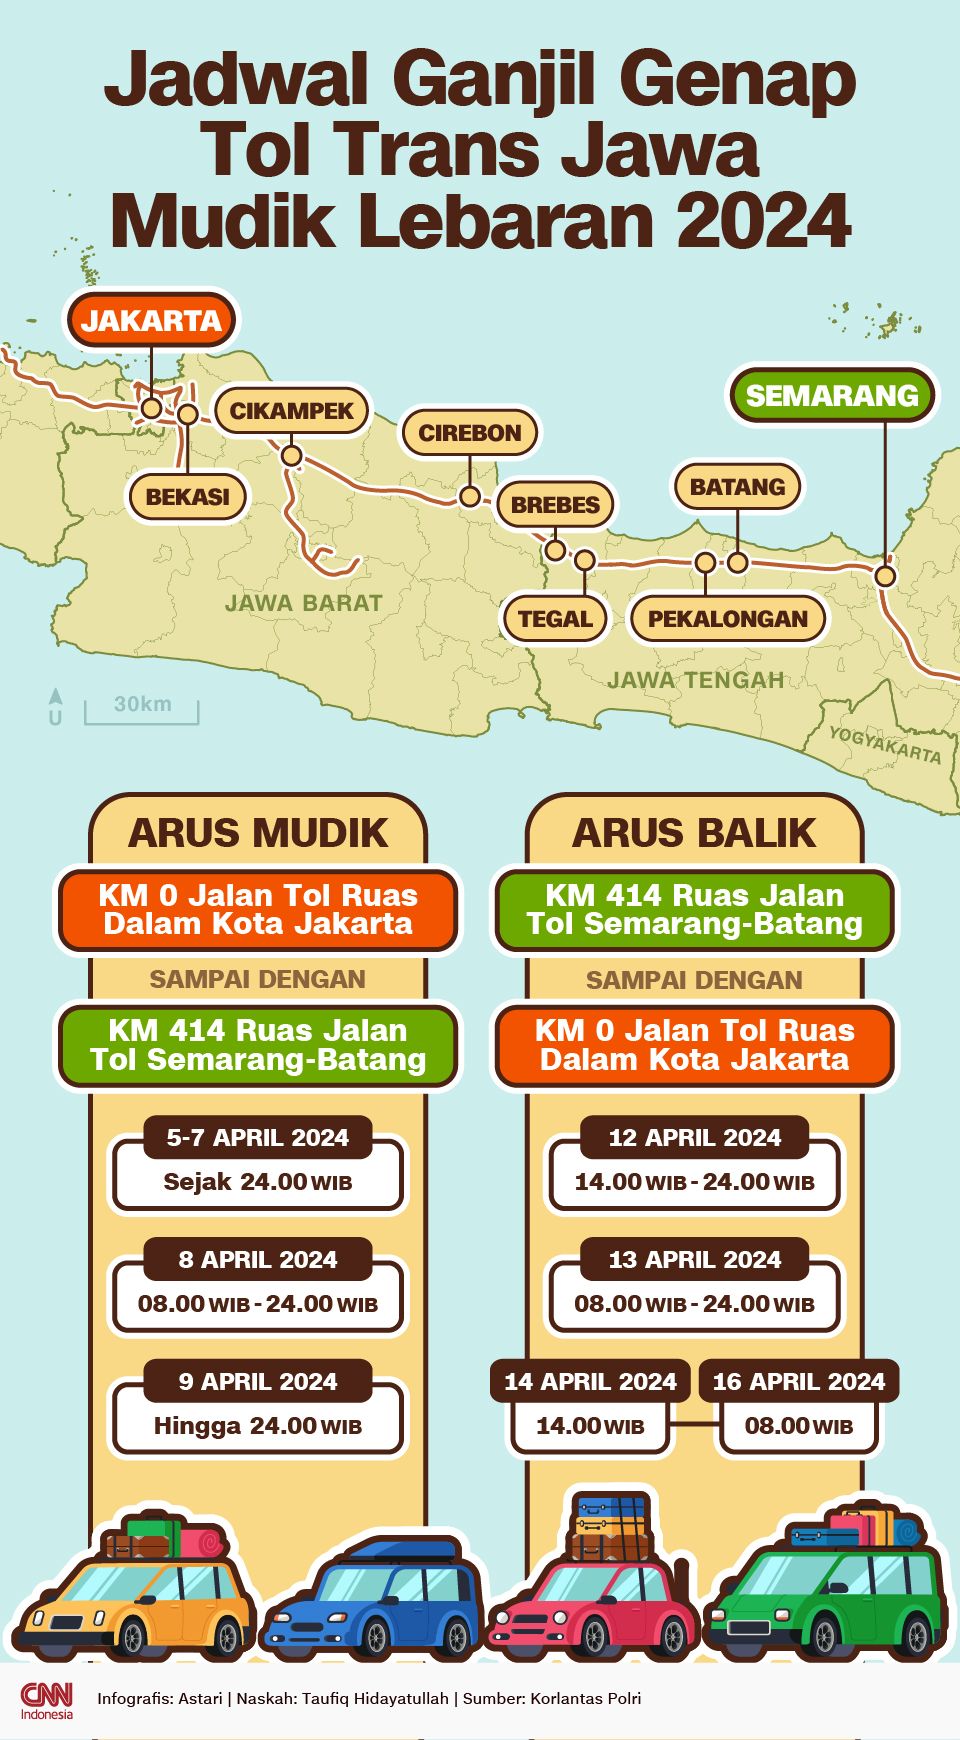 Infografis - Jadwal Ganjil Genap Tol Trans Jawa Mudik Lebaran 2024